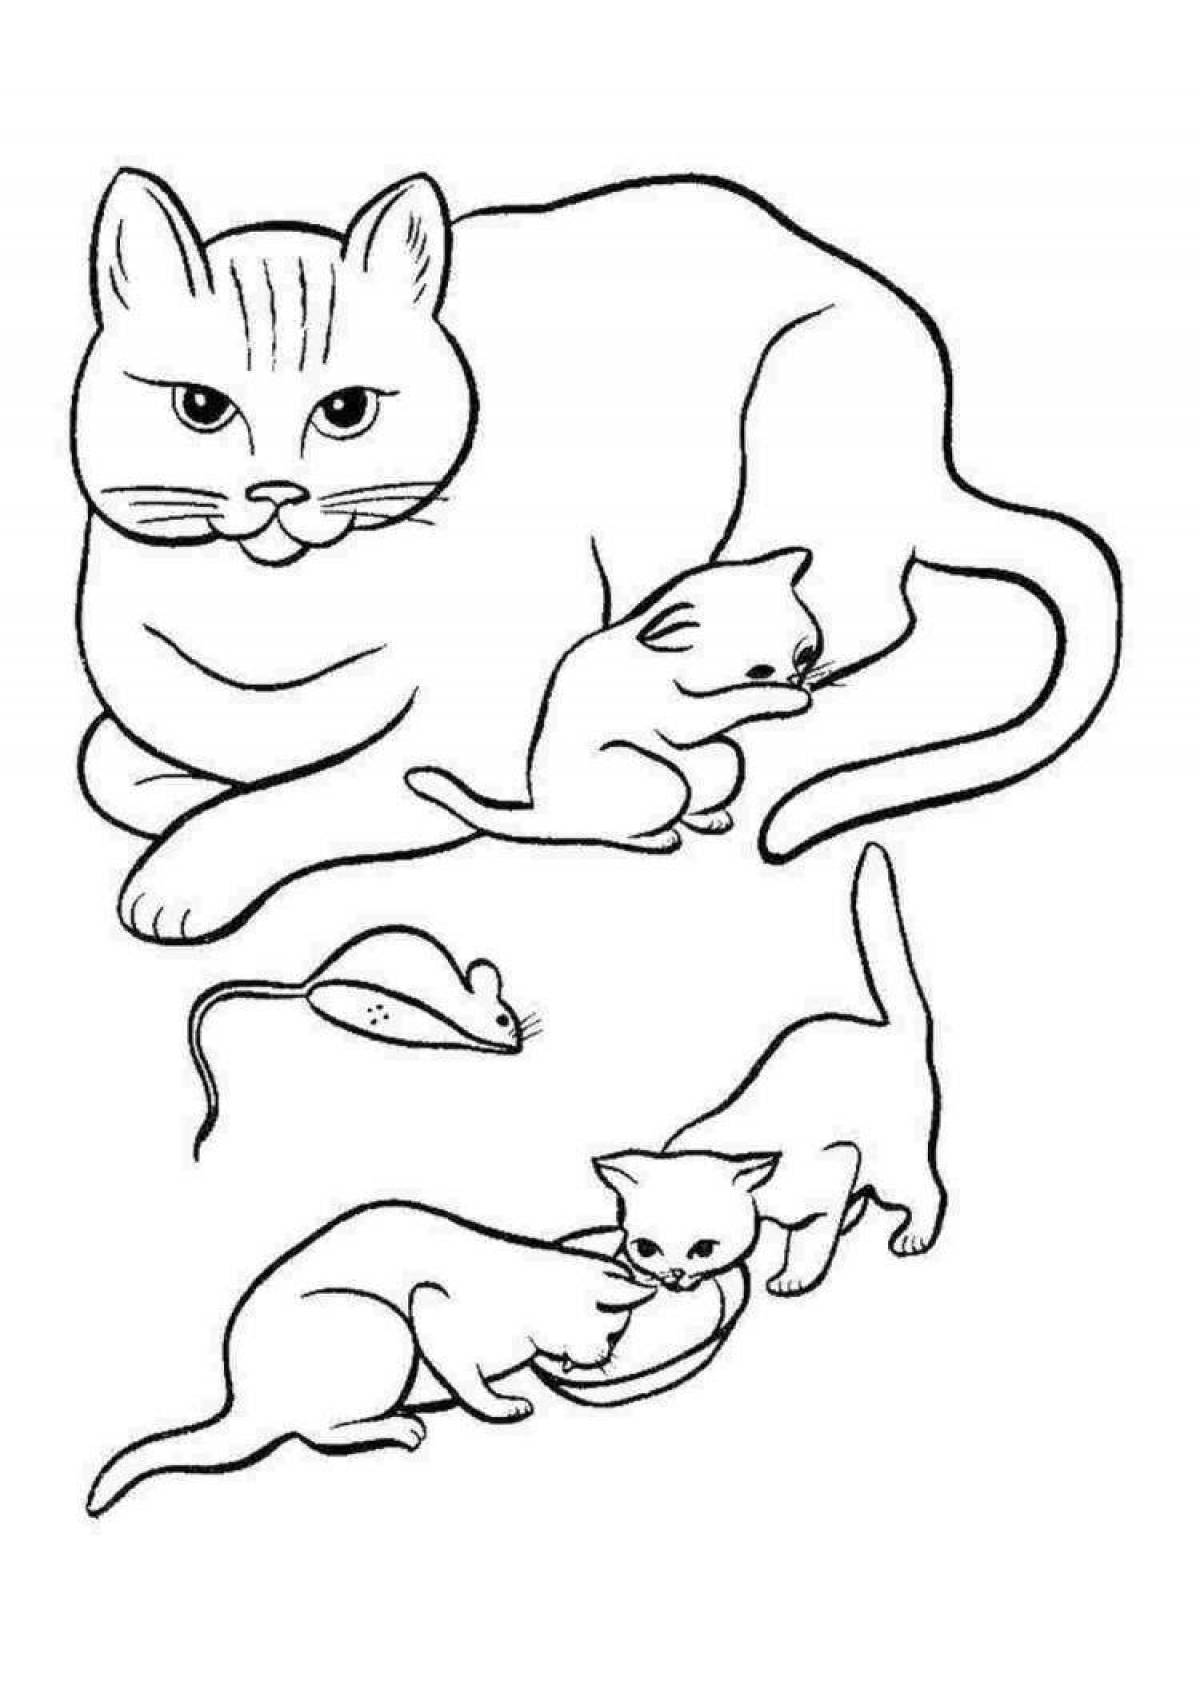 5 кошек раскраска. Кошки. Раскраска. Картинка кошка раскраска. Раскраска кошка с котятами. Кошка раскраска для детей.